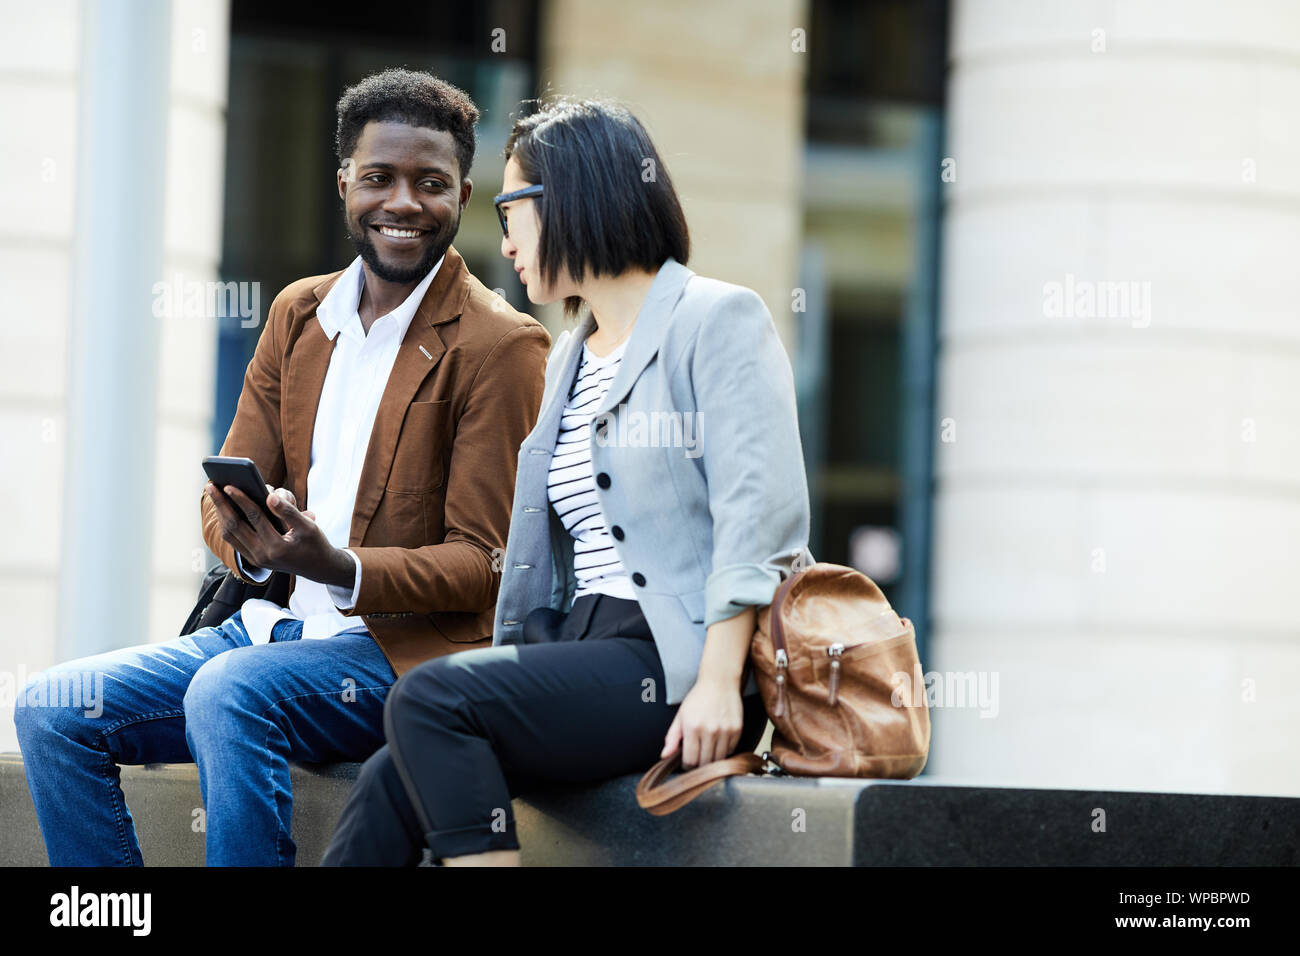 Porträt von zwei junge Geschäftsleute Entspannung im Freien während der Pause, afrikanischer Mann und die asiatische Frau fröhlich plaudernd, Kopie Raum Stockfoto